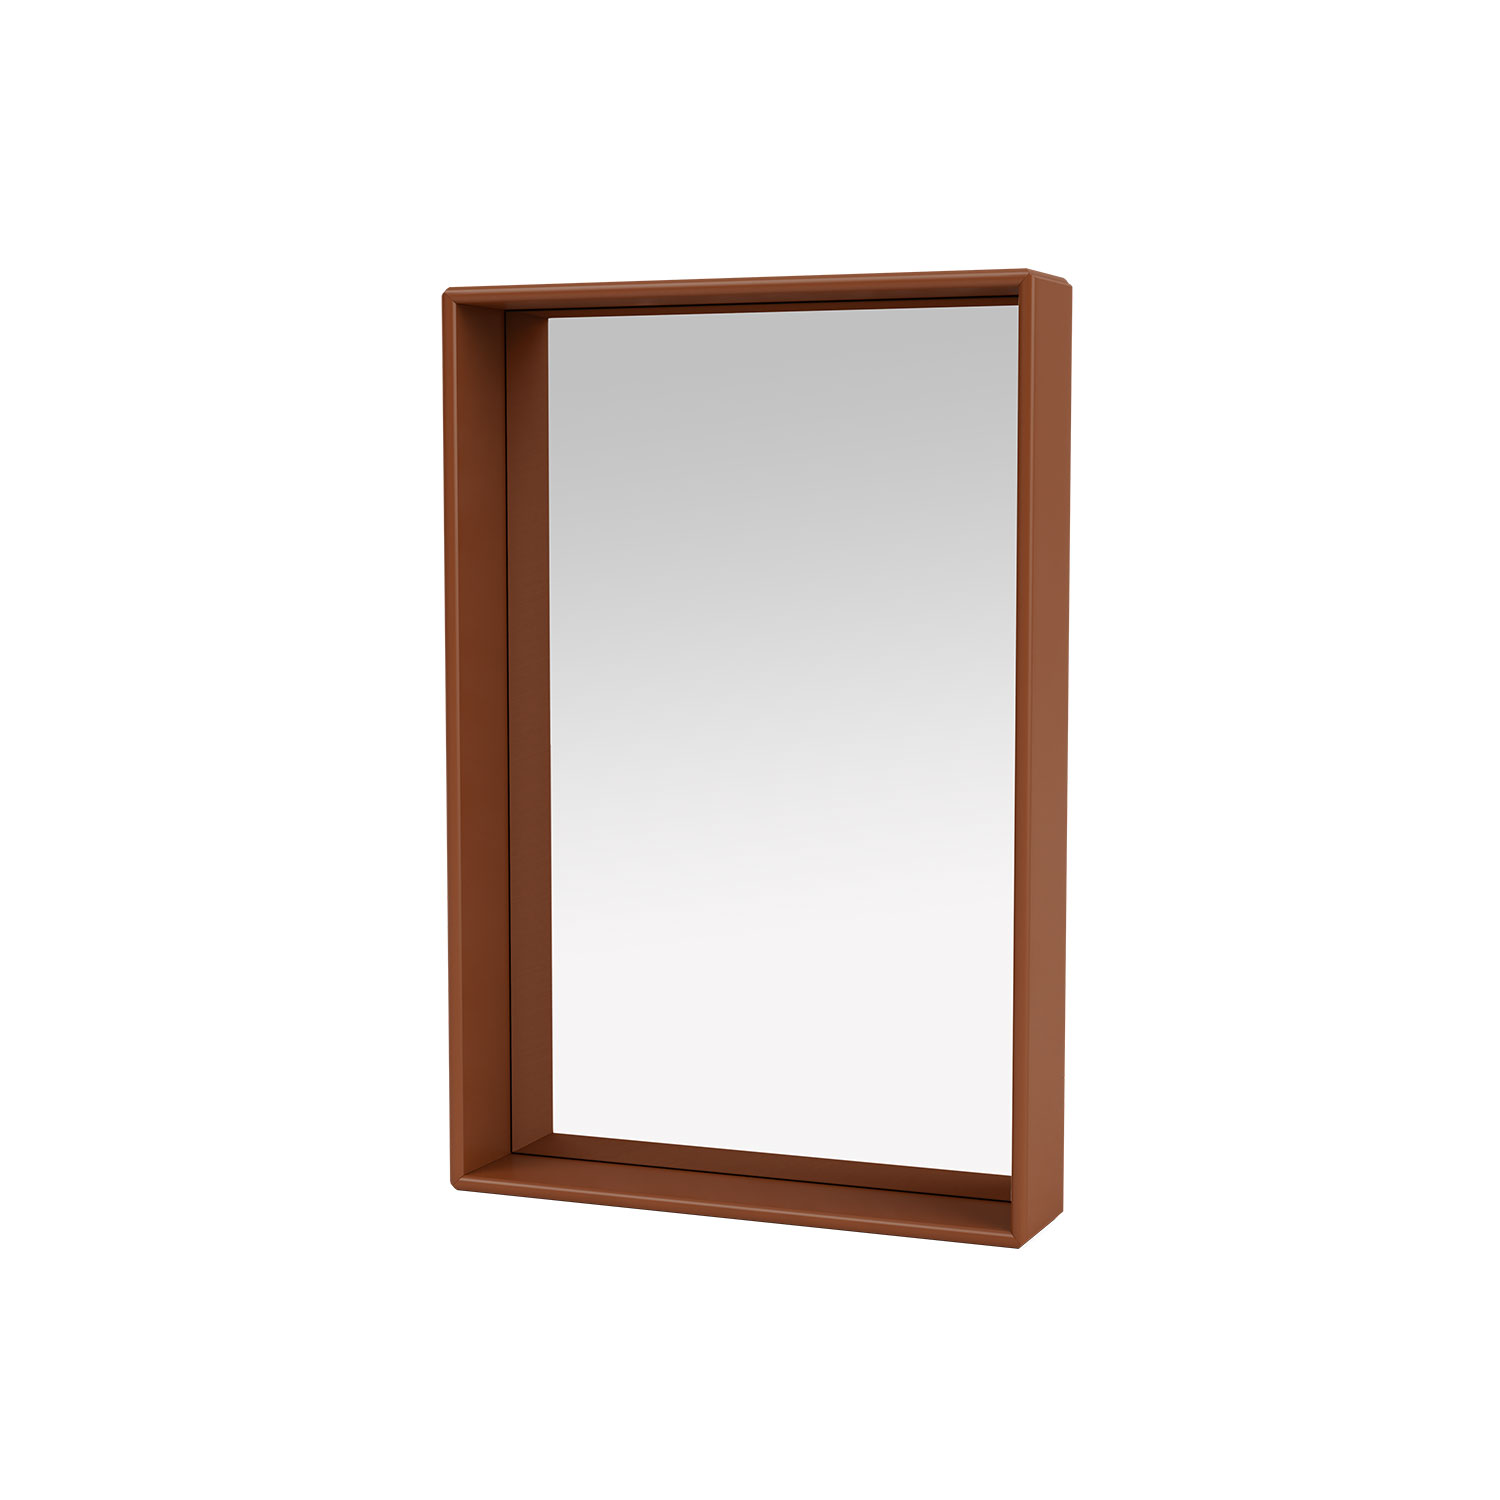 SHELFIE mirror with shelf, Hazelnut